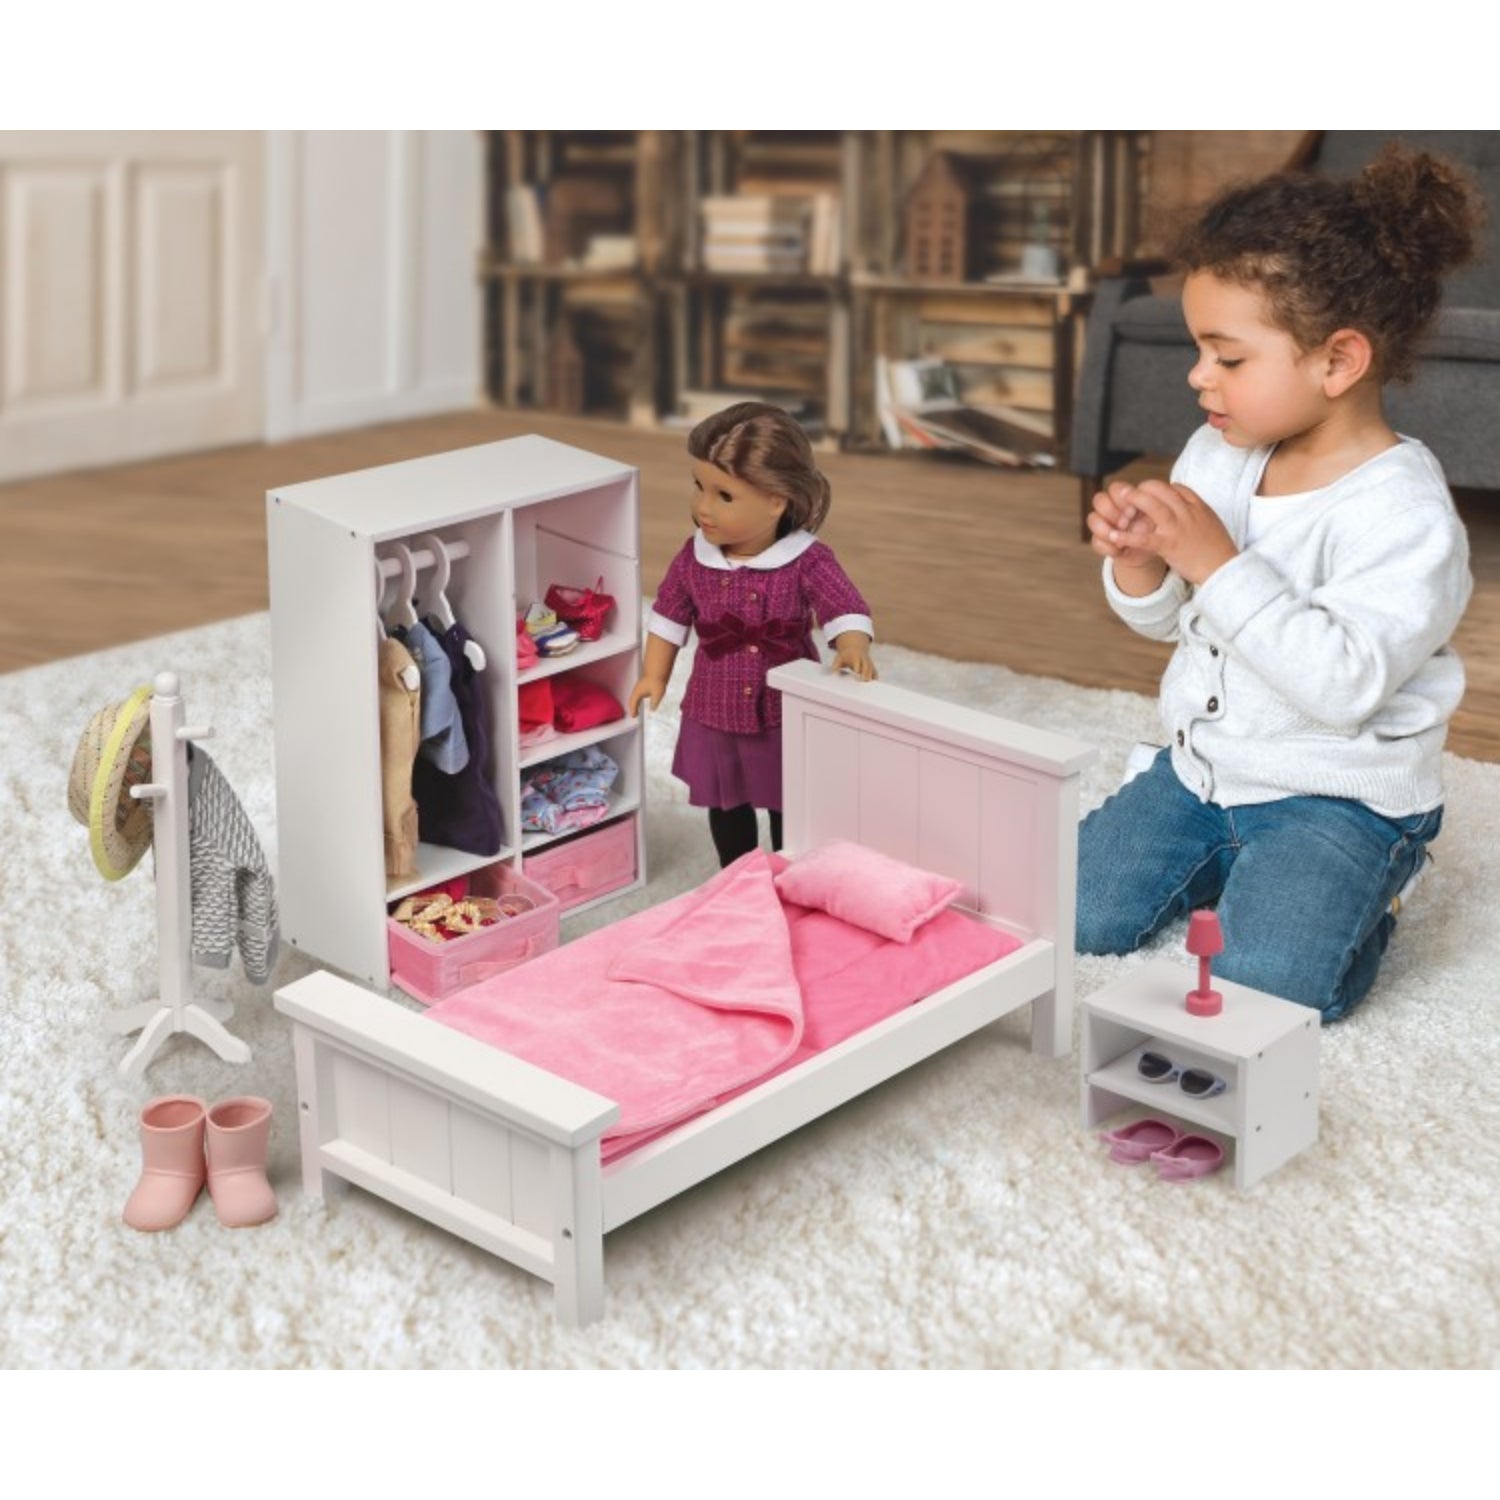 Badger Basket Bedroom Furniture Set for 18 inch Dolls – White/Pink